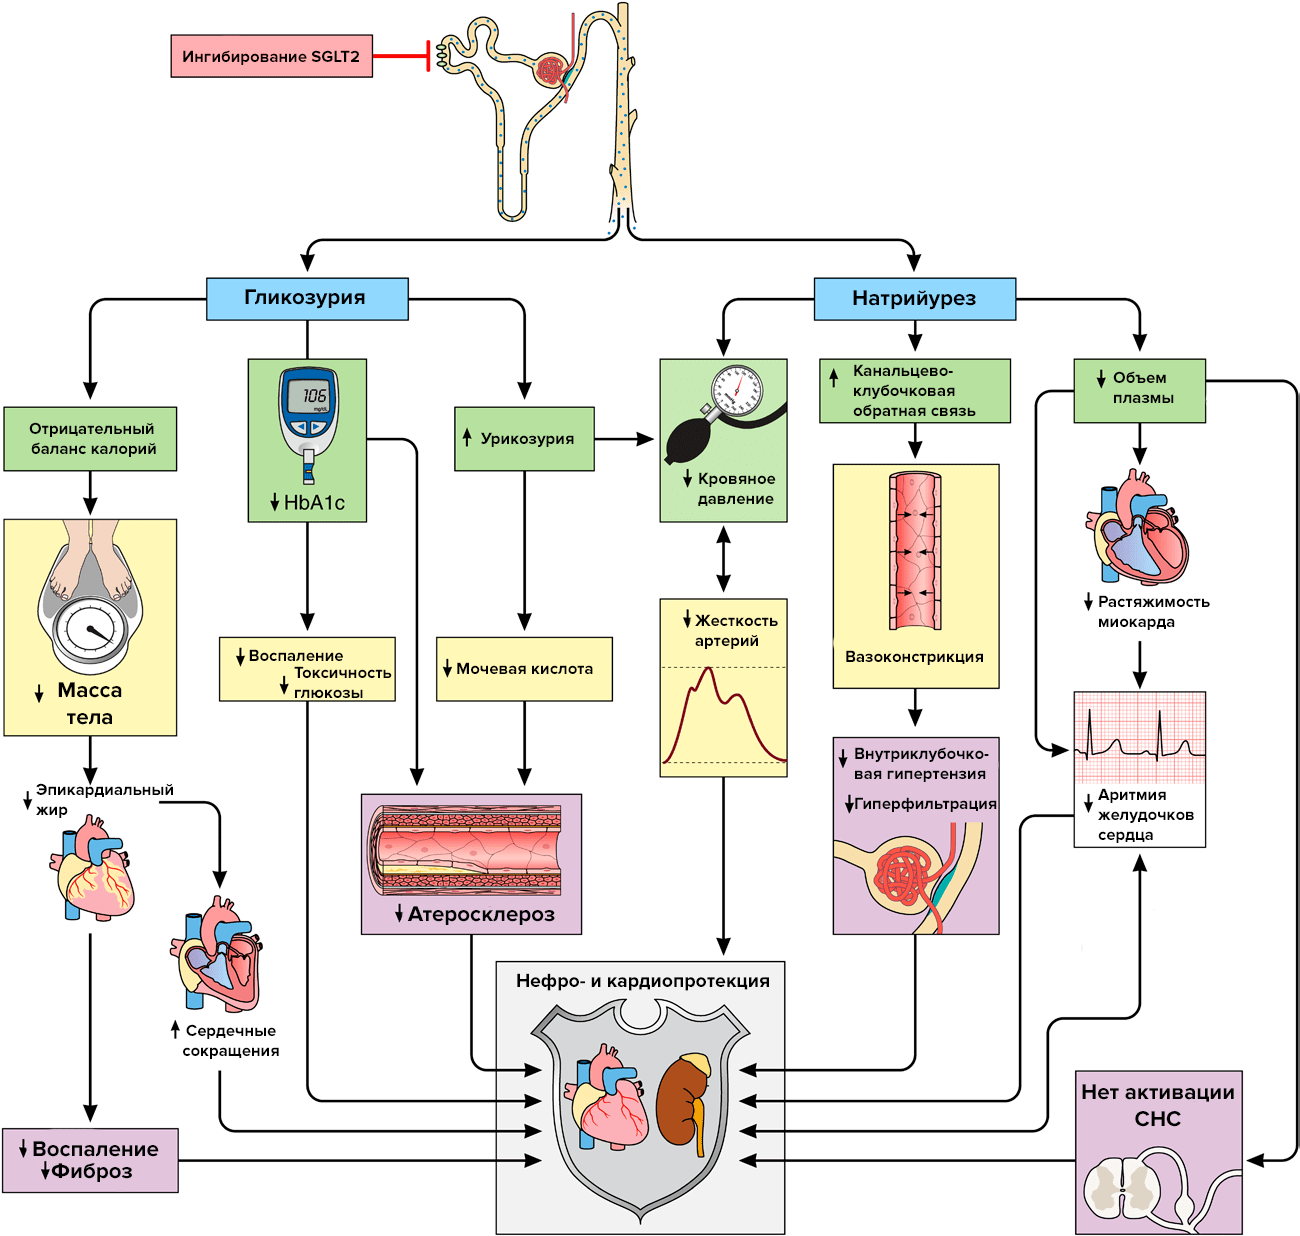 Механизмы нефро- и кардиопротекции эмпаглифлозина